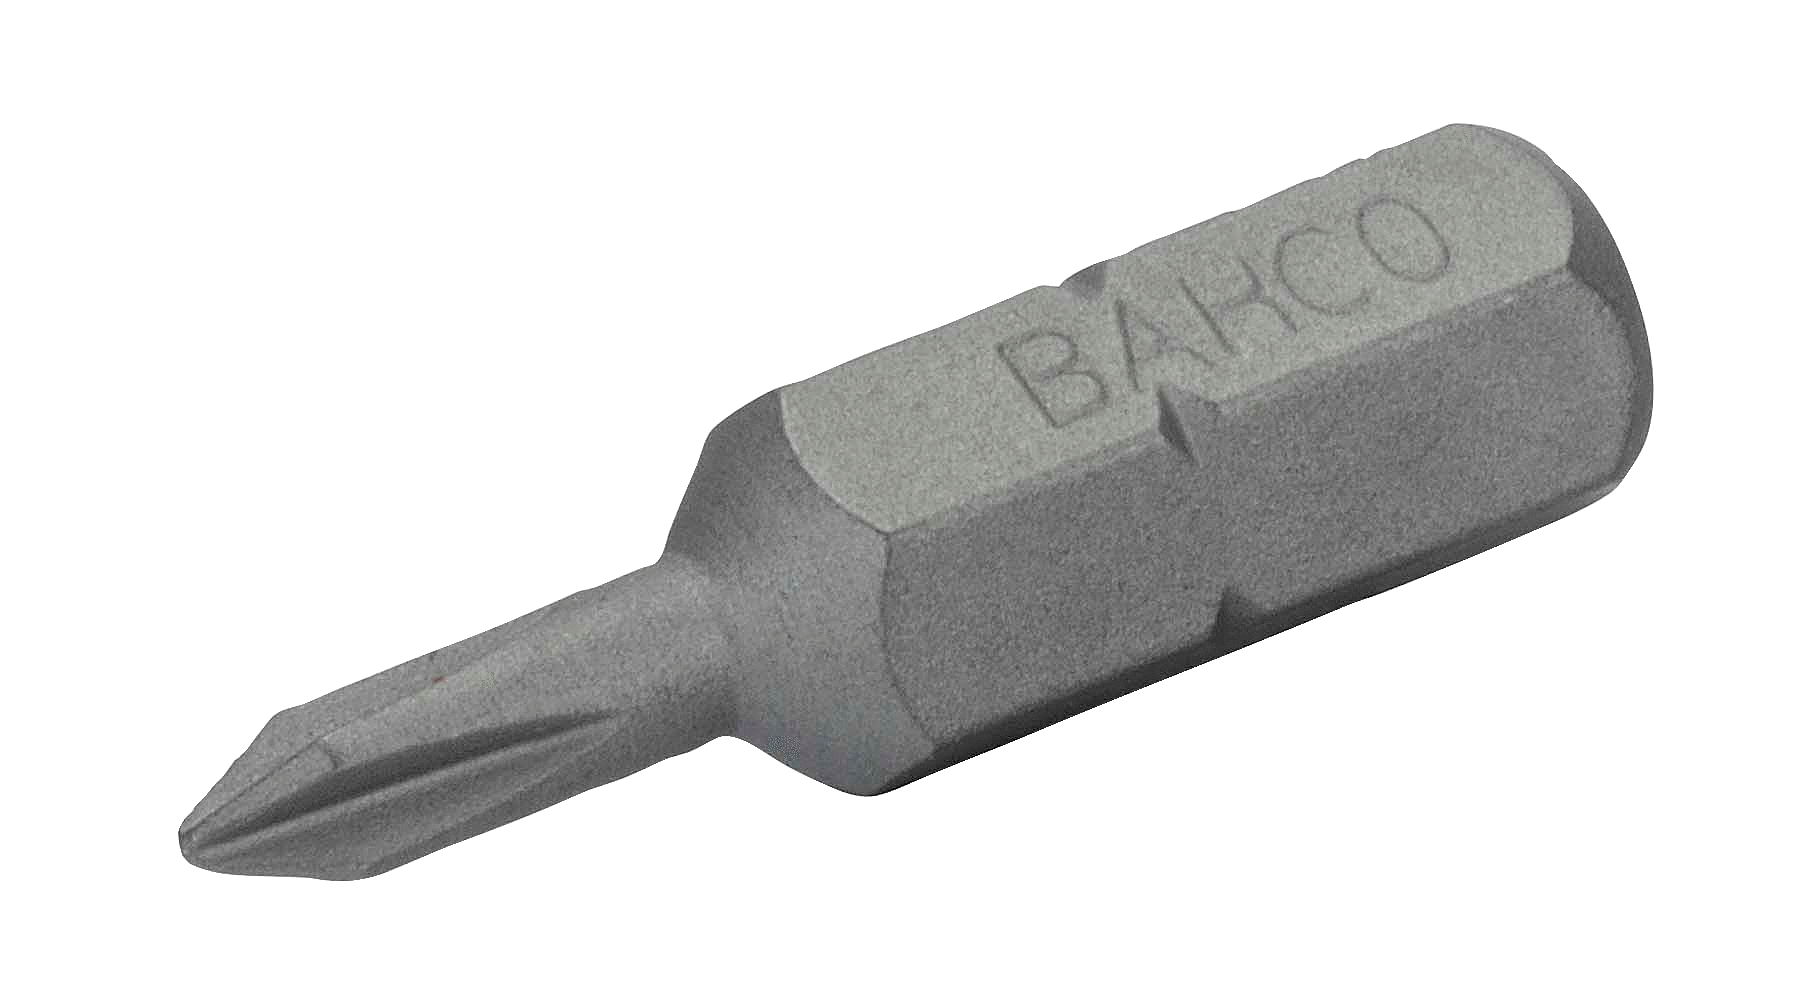 картинка Стандартные биты для отверток Phillips, 25 мм BAHCO 59S/PH1-IPB от магазина "Элит-инструмент"